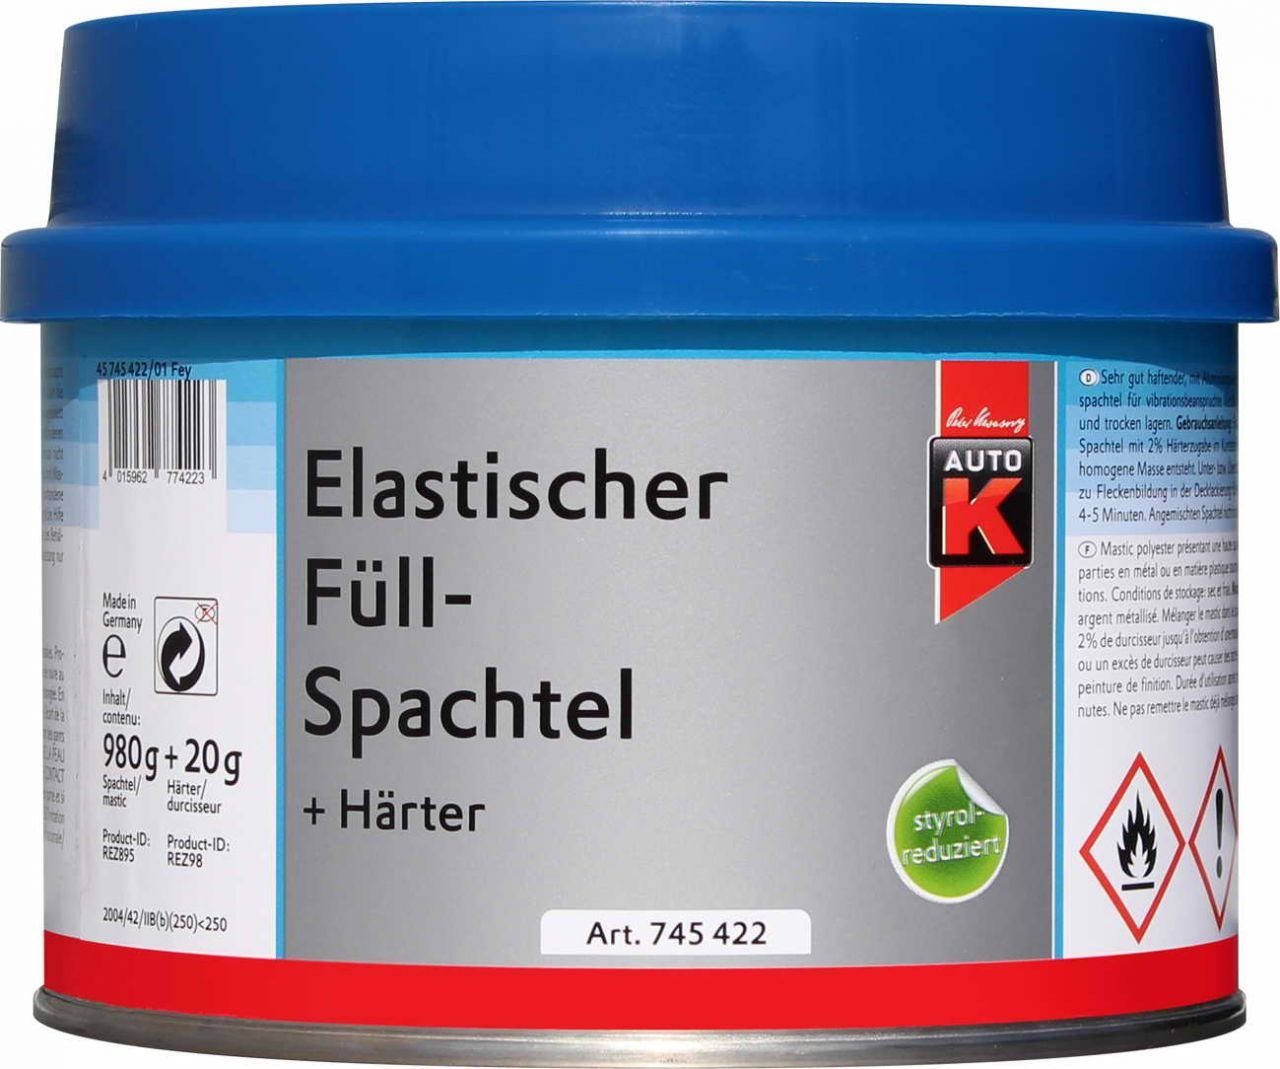 Auto-K Breitspachtel Auto-K + Härter Elastischer Füllspachtel 1000g